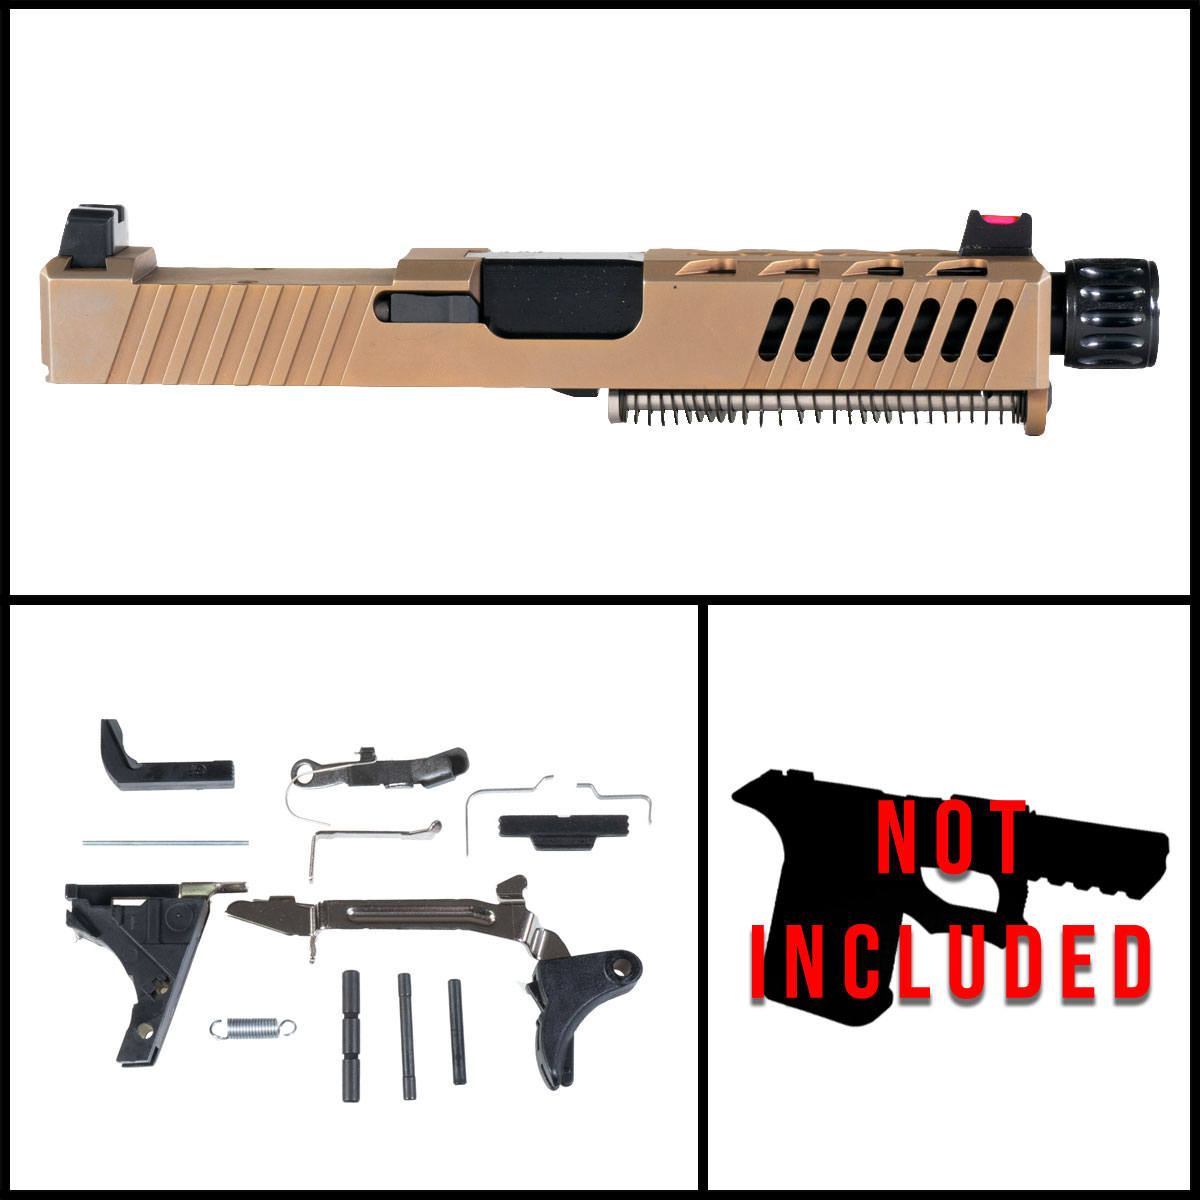 DTT 'RUST' 9mm Full Pistol Build Kit (Everything Minus Frame) - Glock 19 Compatible